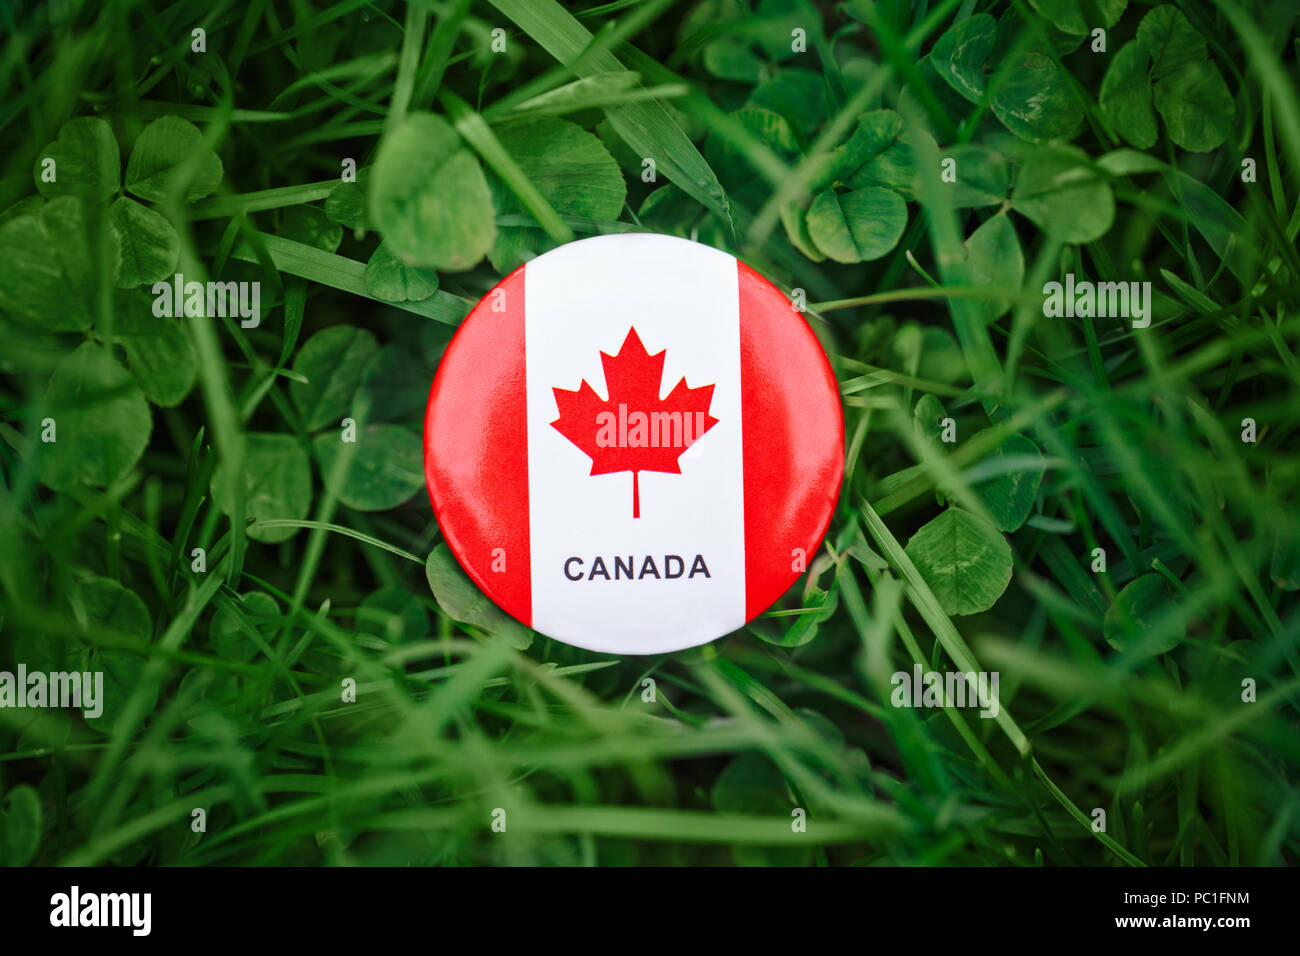 Huy hiệu hình tròn của Canada mang trong mình tinh thần về sự đoàn kết và tình yêu đất nước. Sự đa dạng về khoa học, chính trị, kinh tế đã được thể hiện một cách hoàn hảo và sắc nét trên sản phẩm này. Hãy khám phá thêm về huy hiệu hình tròn Canada qua hình ảnh liên quan để cảm nhận rõ ràng hơn về tinh thần đoàn kết của người dân Canada.